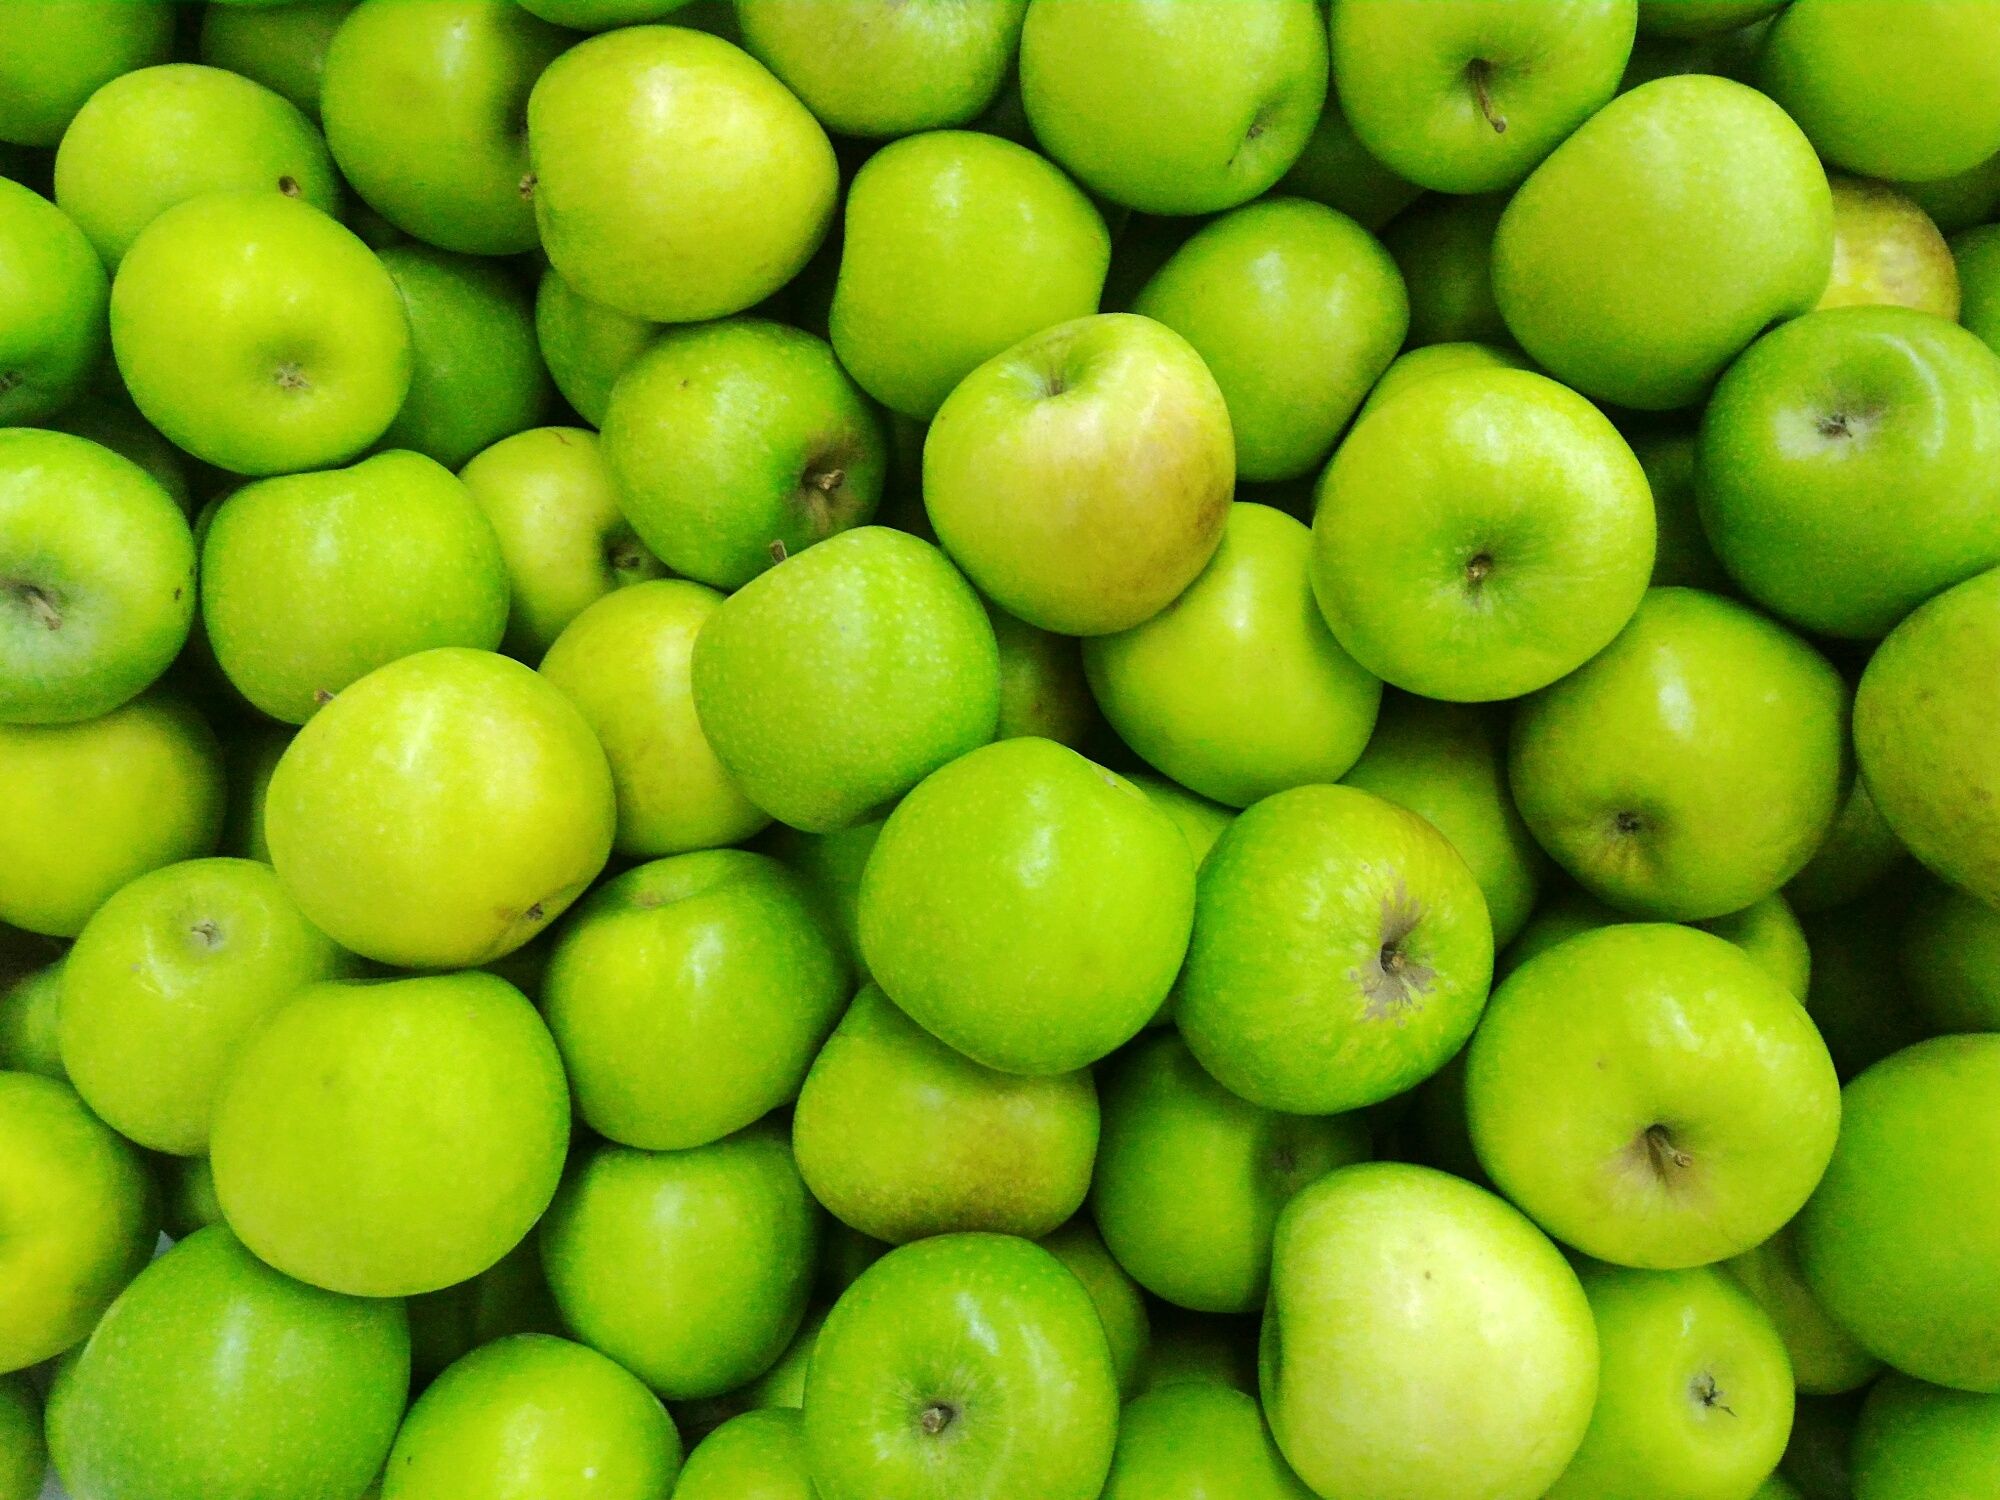 https://hips.hearstapps.com/hmg-prod/images/full-frame-shot-of-granny-smith-apples-royalty-free-image-1627315895.jpg